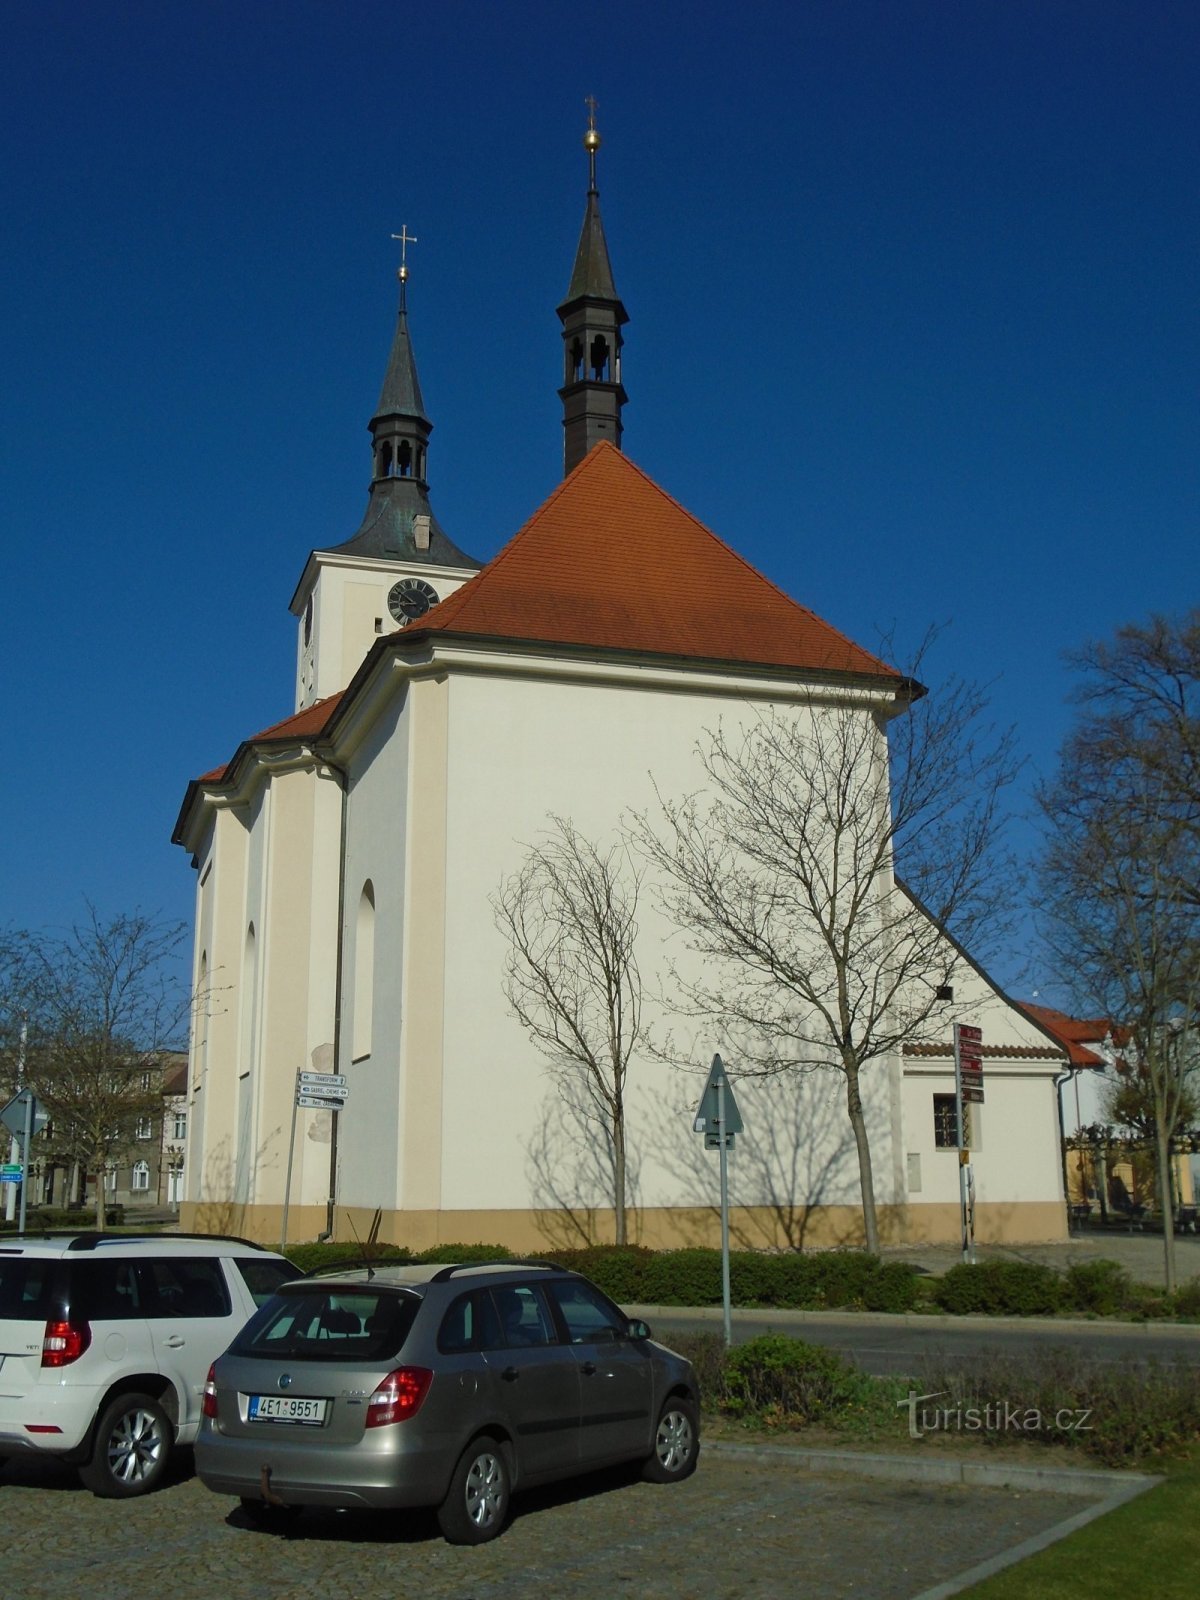 Церковь св. Мария Магдалина (Лазне Богданеч, 21.4.2019 апреля XNUMX г.)